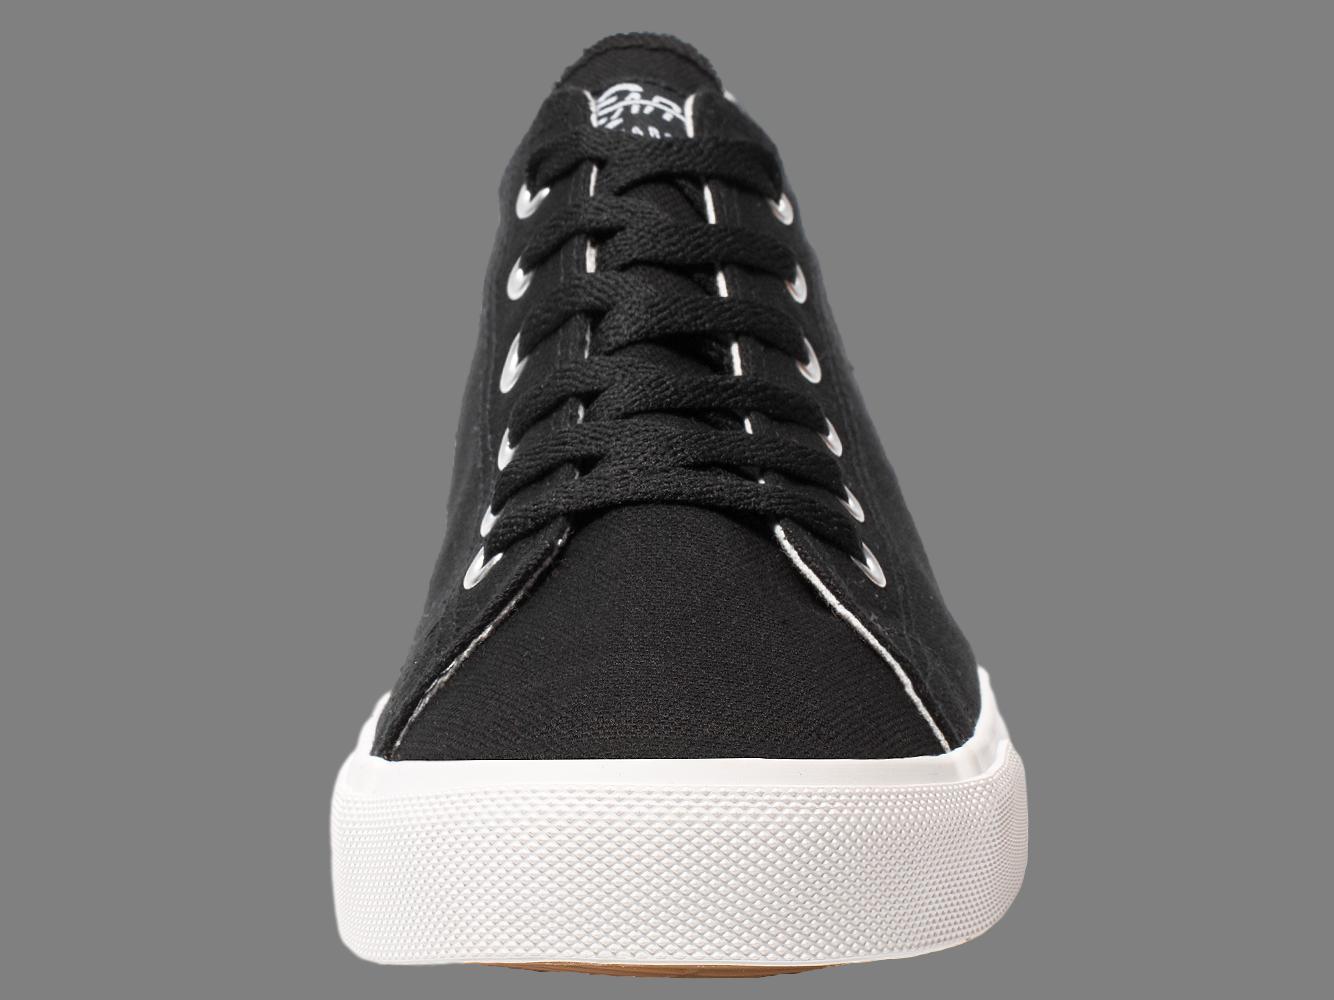 Fear0 NJ Unisex Simple Black/White Canvas Loafer Sneakers - Men - Footwear - Shoes - Sneakers - Benn~Burry